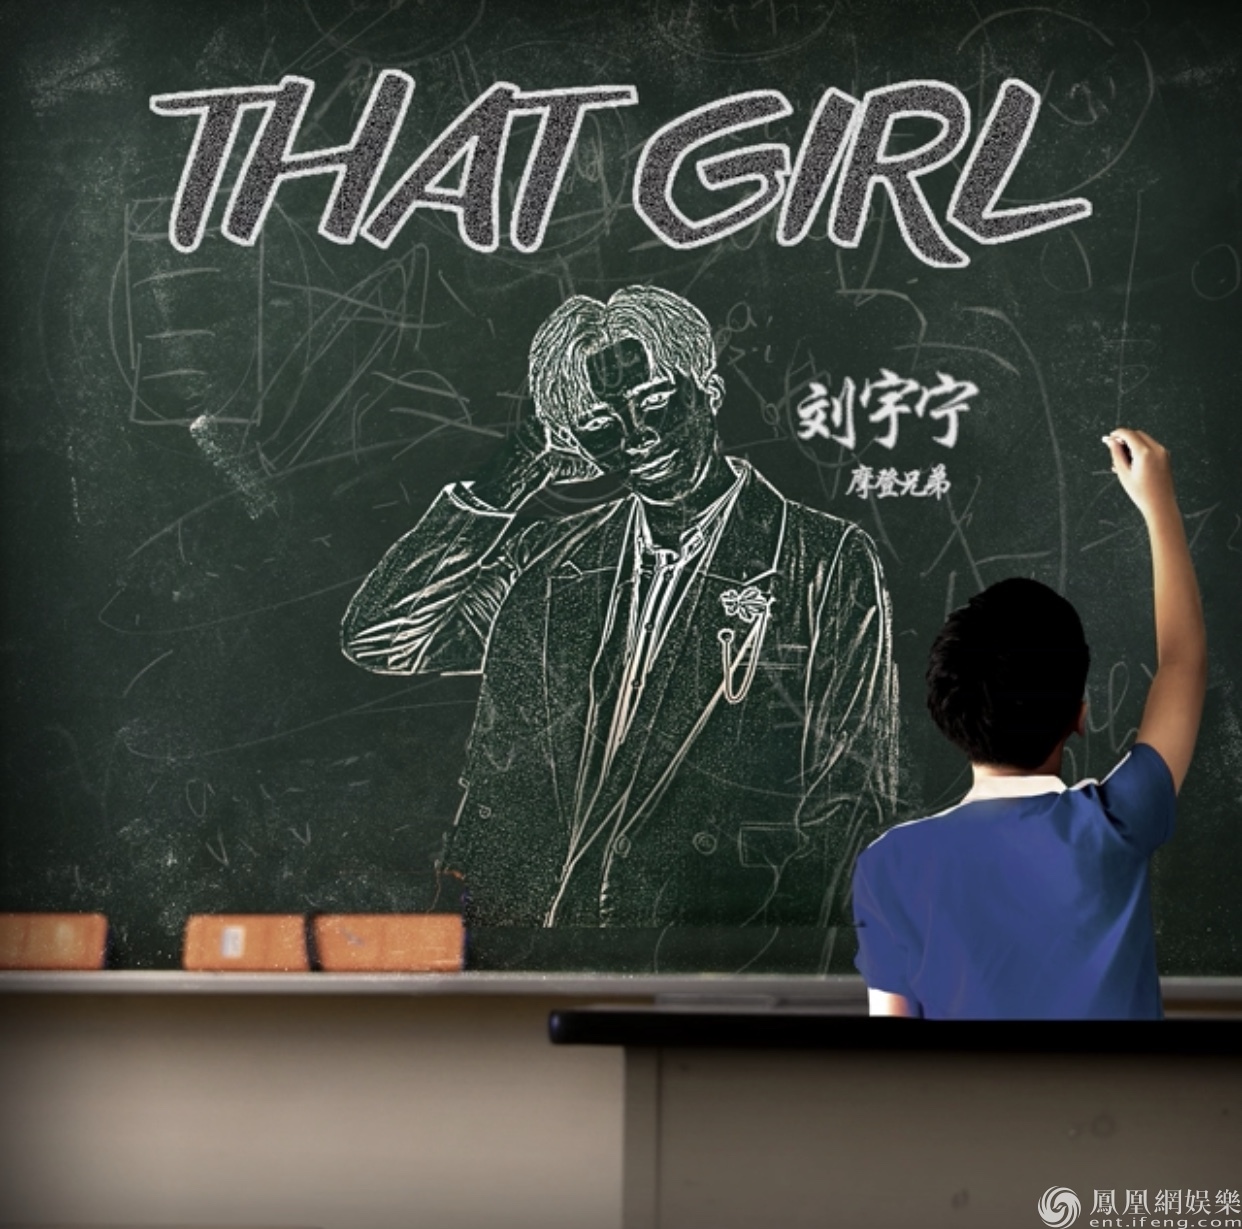 刘宇宁首支国际化背景单曲 《That Girl》全球上线